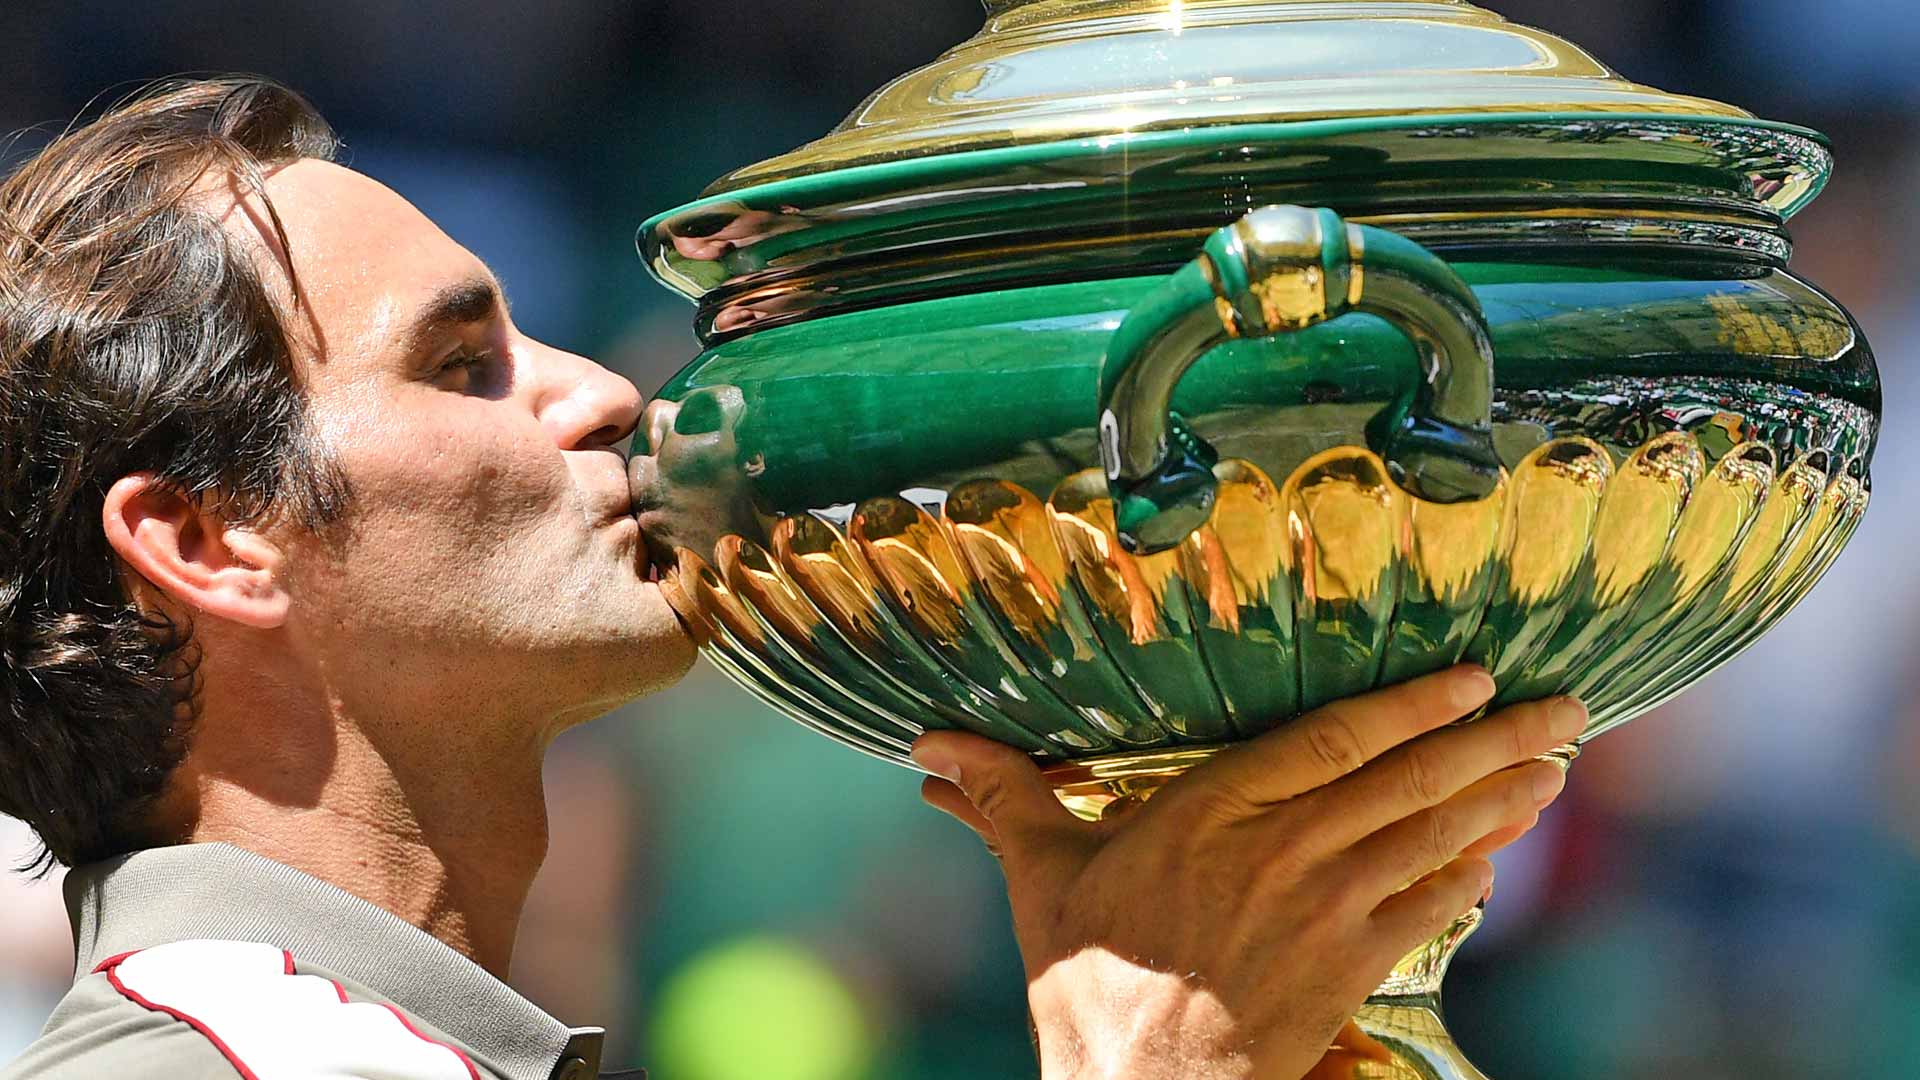 Roger Federer celebrates his 10th Halle trophy